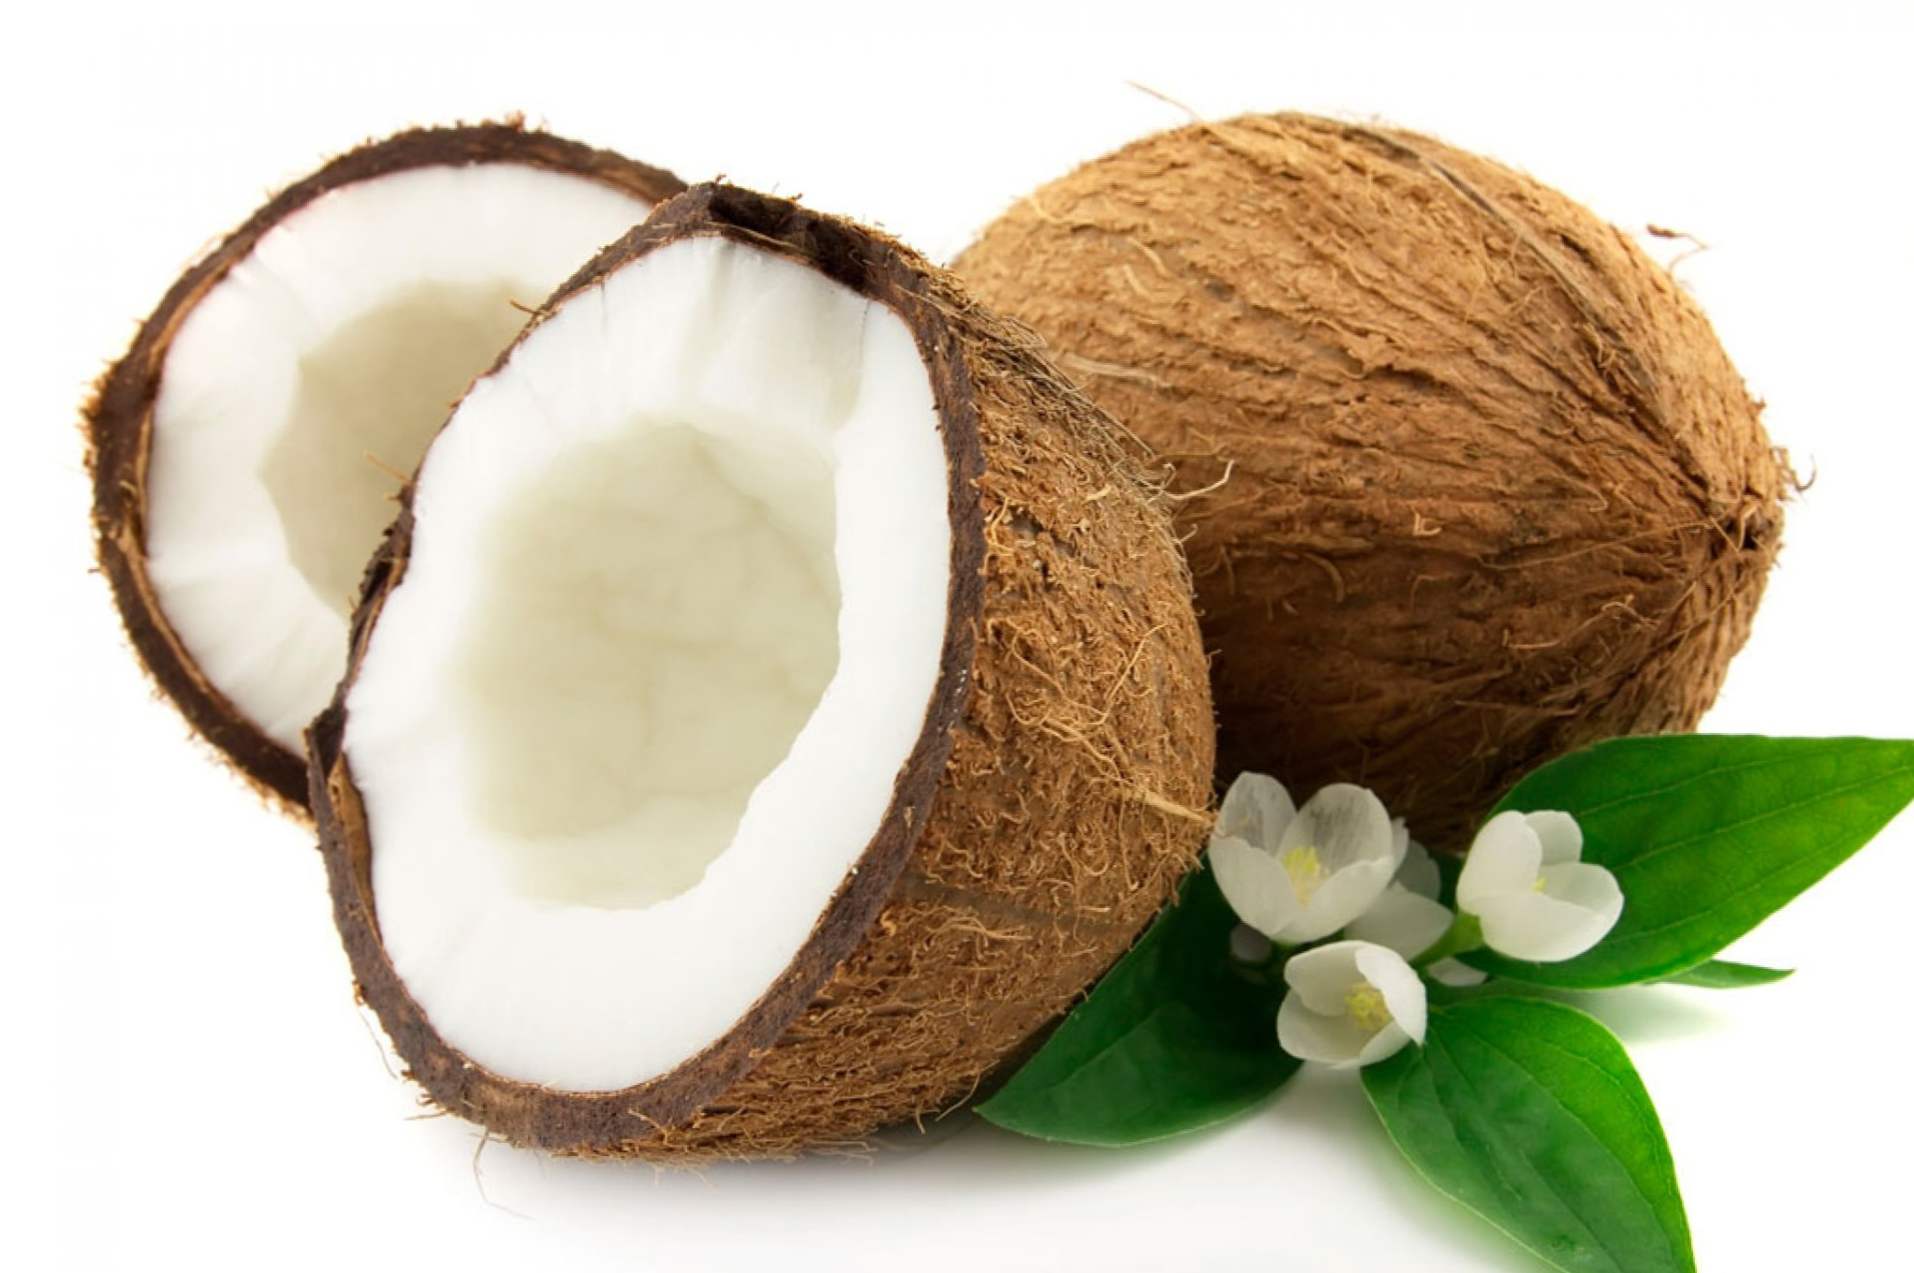 Як почистити кокос в домашніх умовах - 4 швидких способу